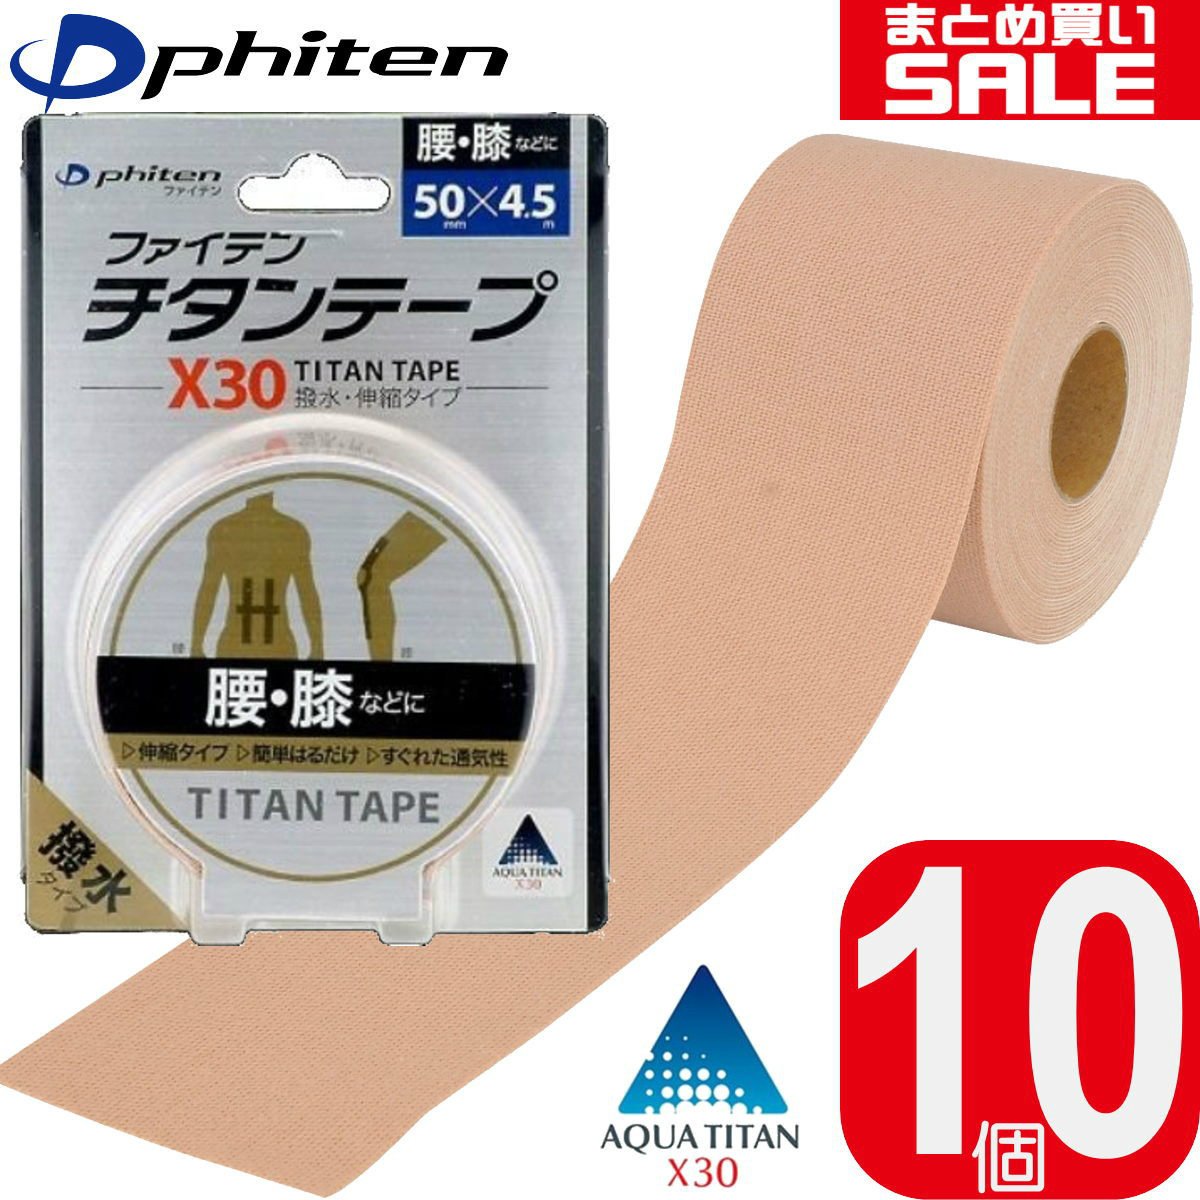 Phiten チタンテープ X30 伸縮タイプ 5cm×4.5m×2巻 0110PU711029 水や汗に強い撥水タイプ  ファイテン 通販